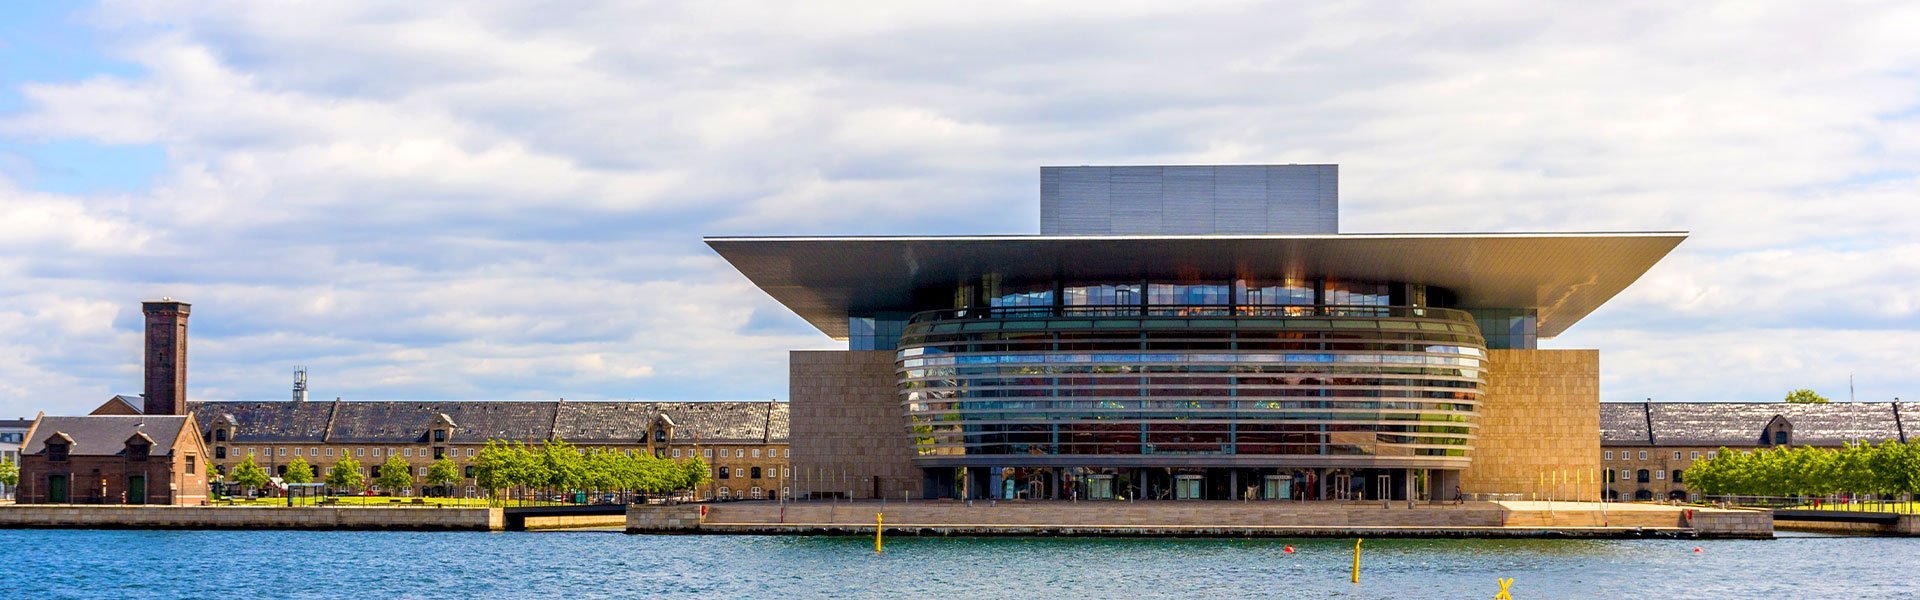 Operagebouw in Kopenhagen, Denemarken